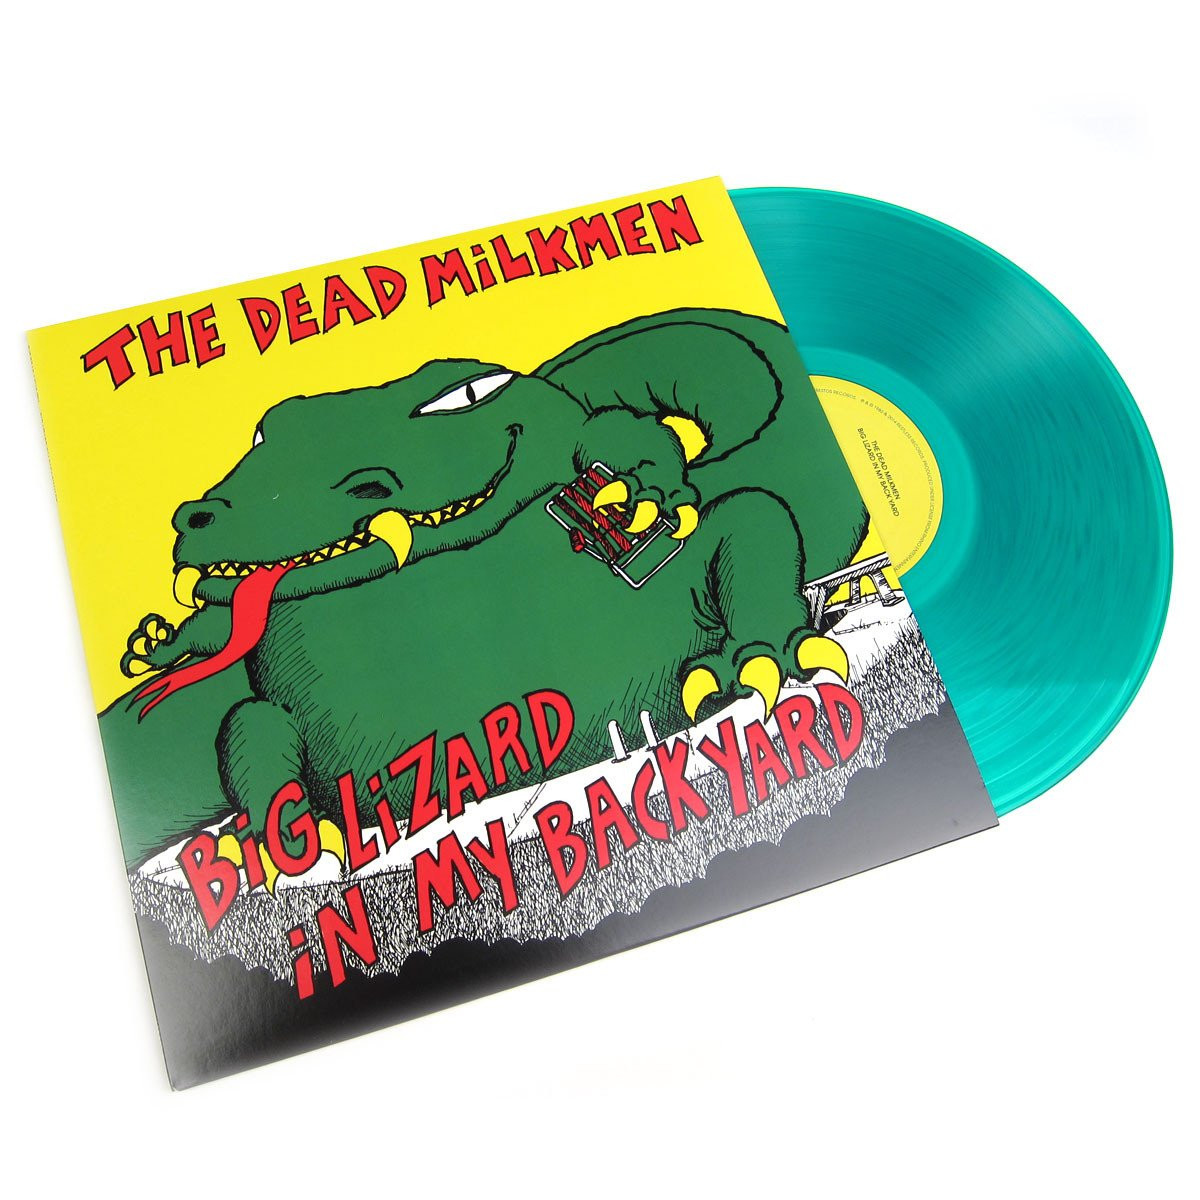 Best ideas about Big Lizard In My Backyard
. Save or Pin The Dead Milkmen Big Lizard In My Backyard Colored Vinyl Now.